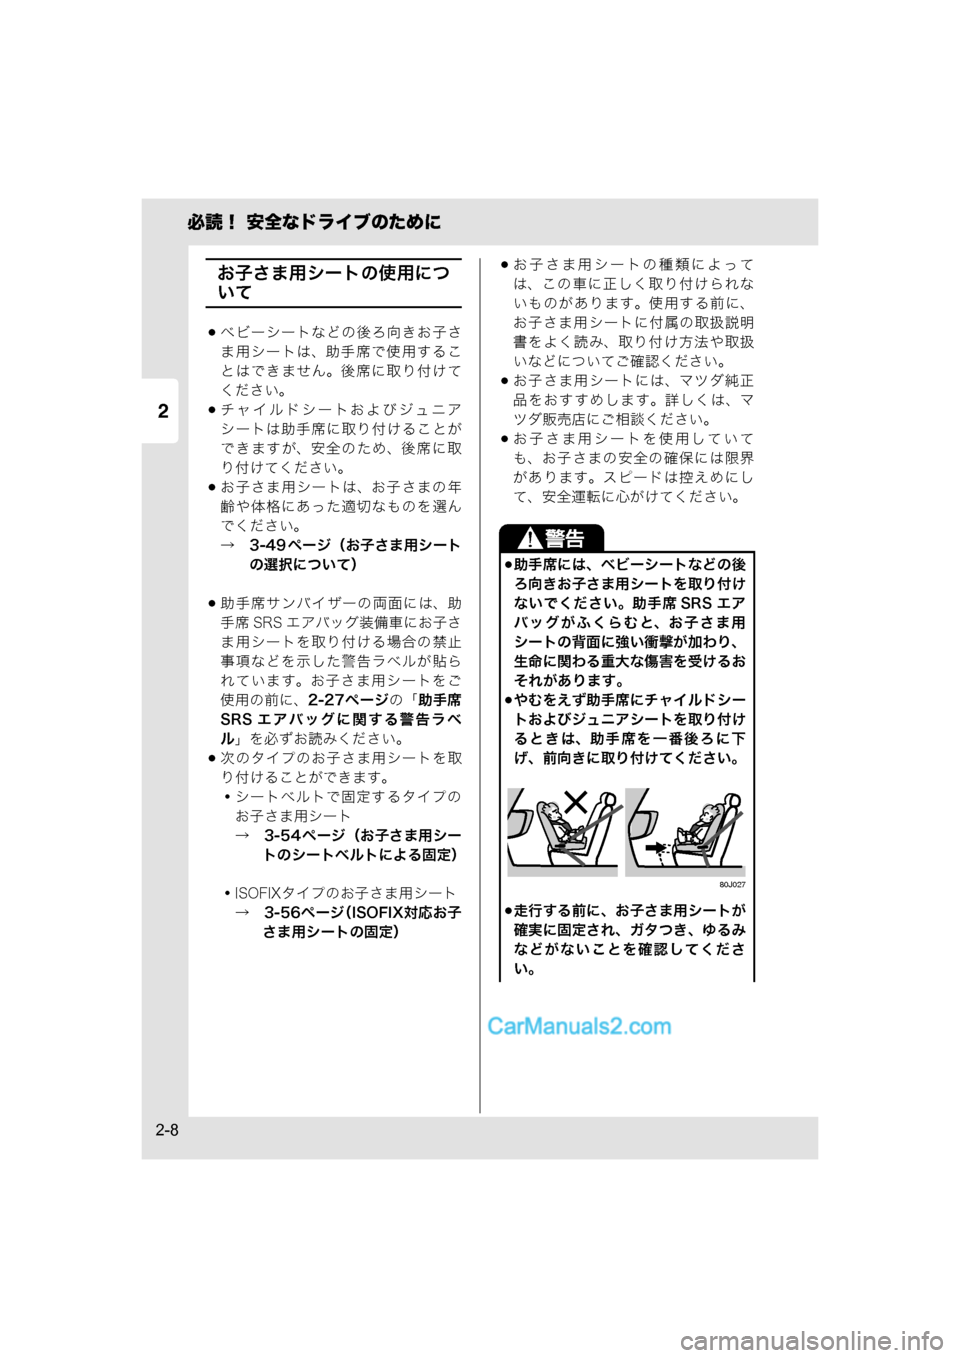 MAZDA MODEL CARROL 2015  取扱説明書 (キャロル) (in Japanese) 2
必読！ 安全なドライブのために
2-8
お子さま用シートの使用につ
いて
ベビーシートなどの後ろ向きお子さ
ま用シートは、助手席で使用するこ
�